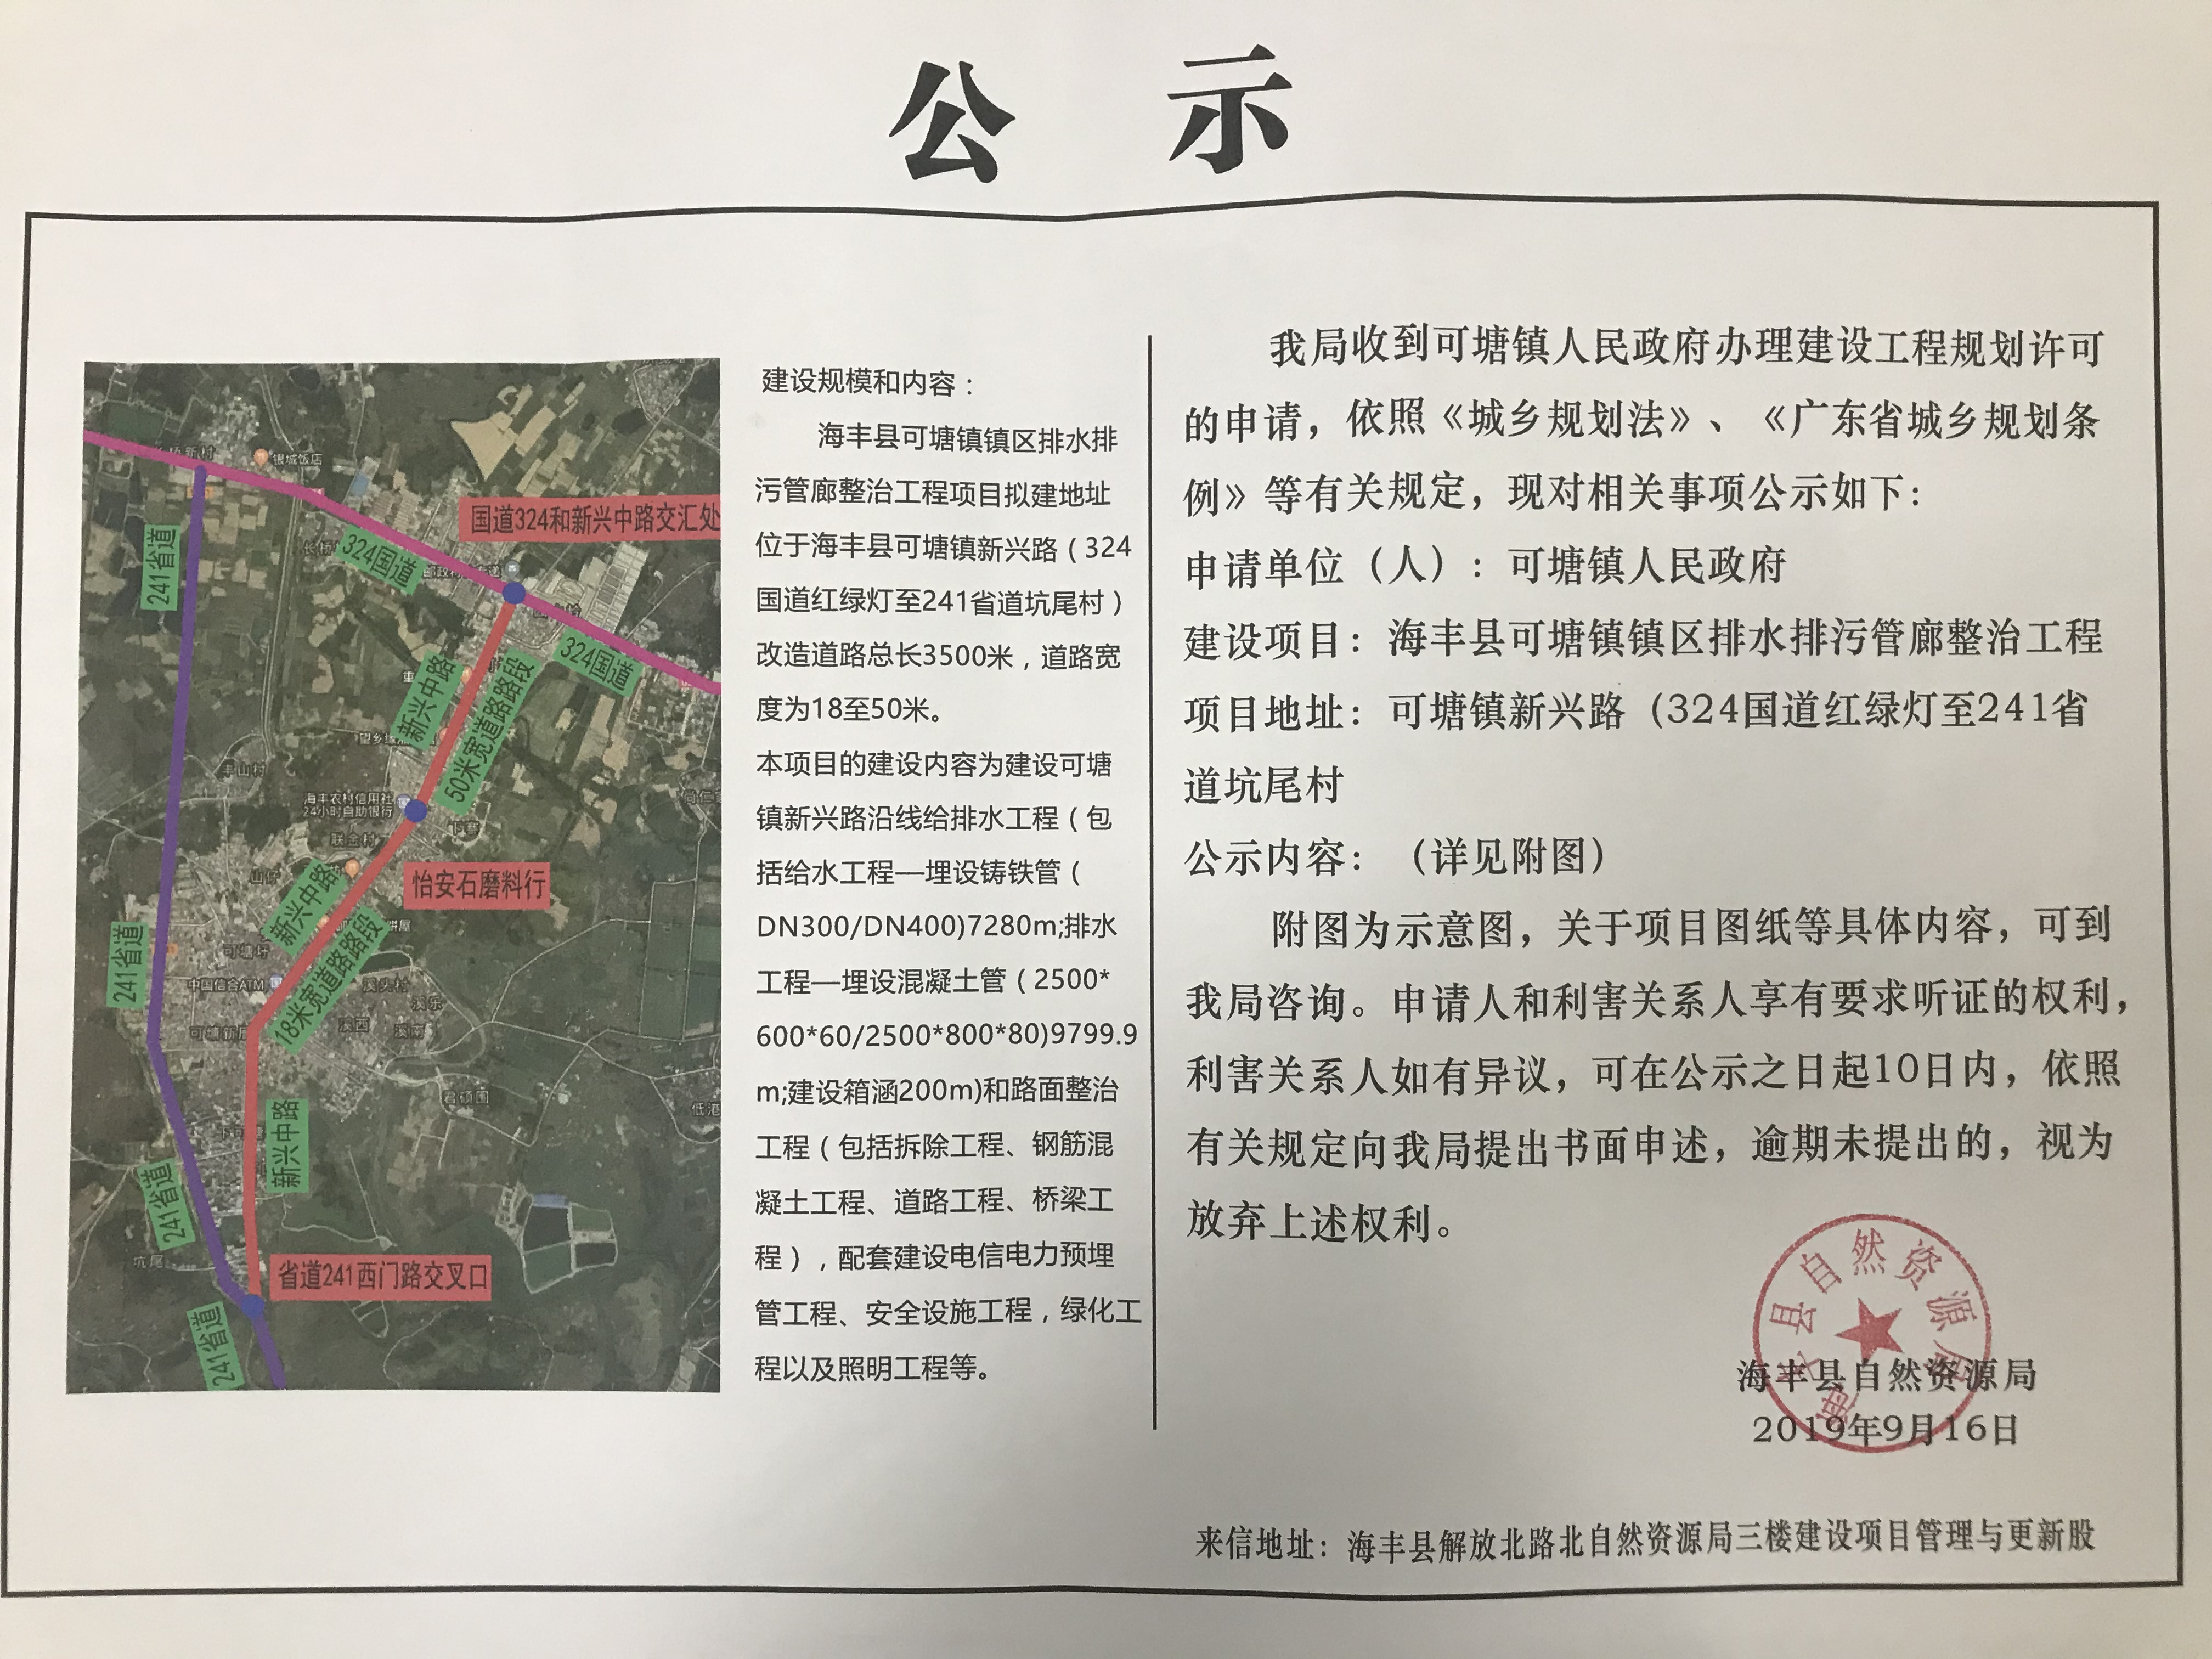 建设工程规划许可公示(海丰县可塘镇镇区排水排污管?